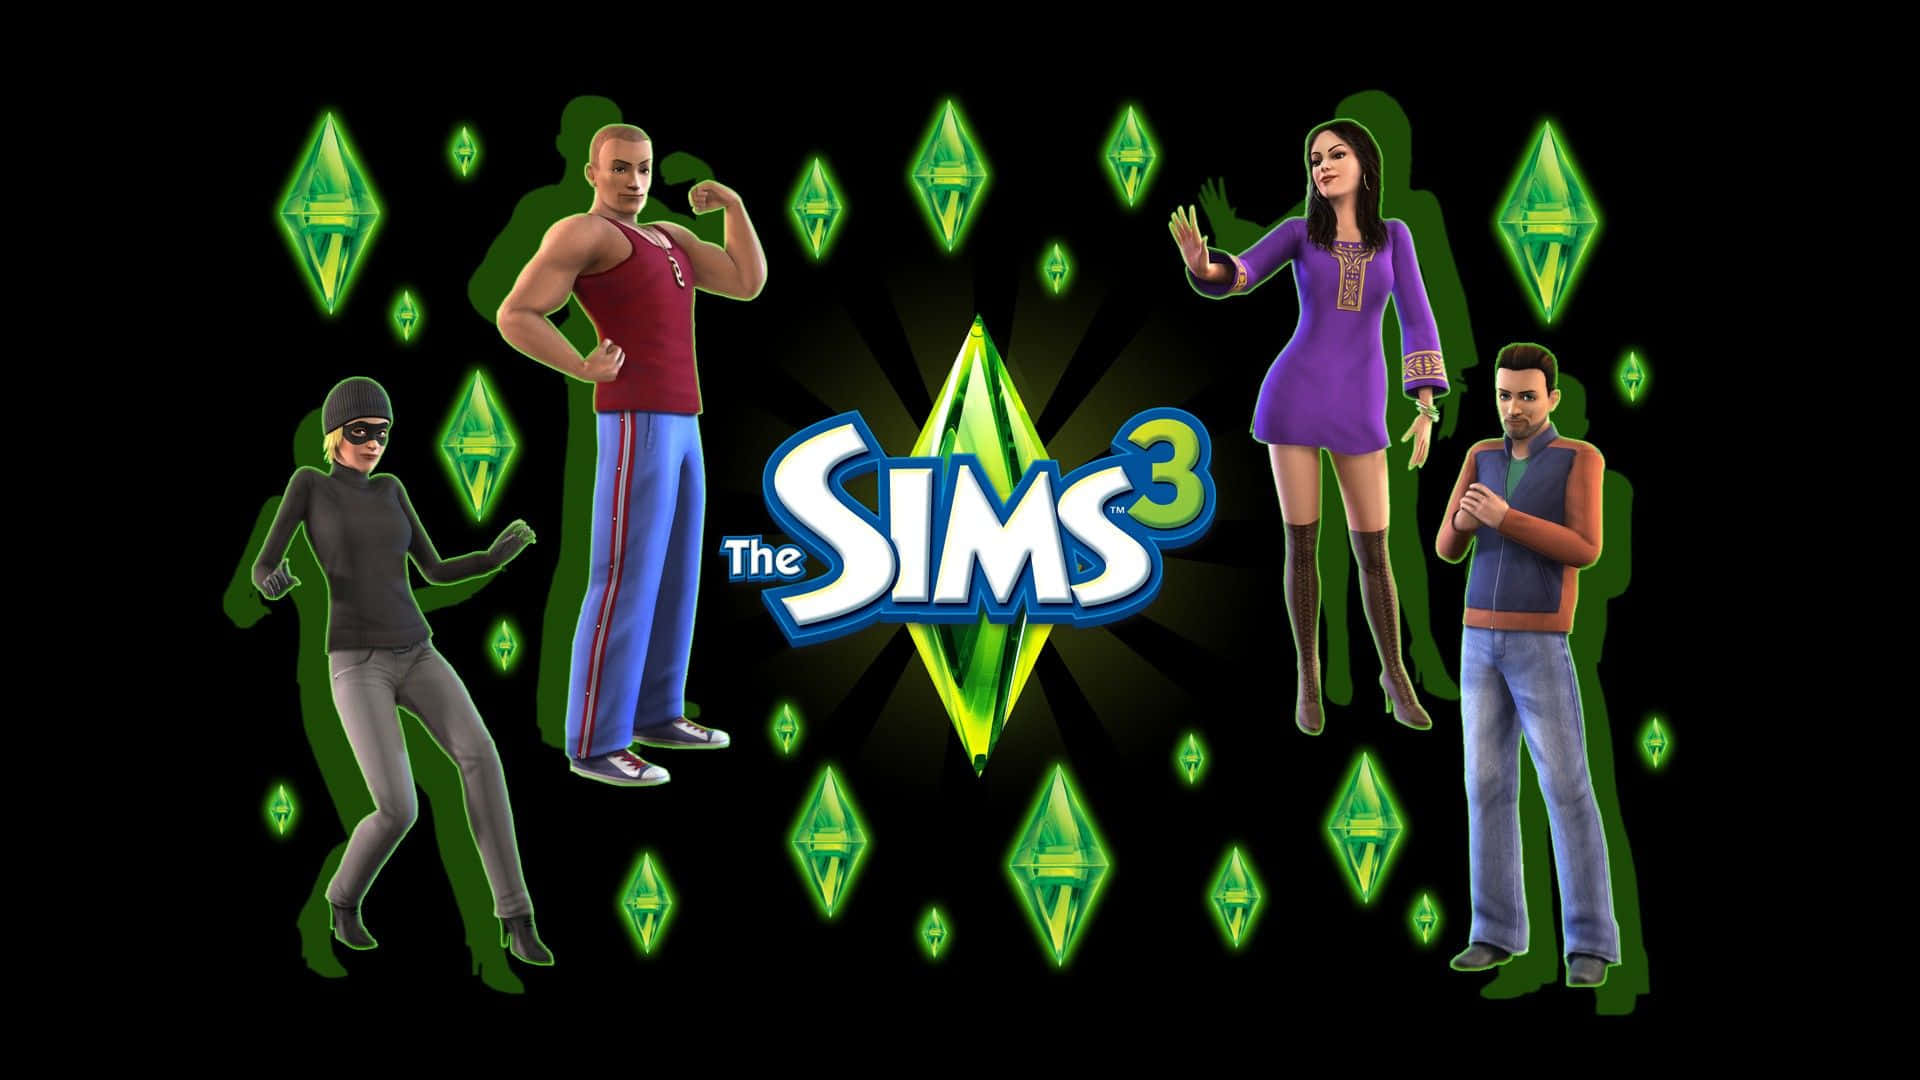 Sims3-logotypen Med Människor Framför Den. Wallpaper